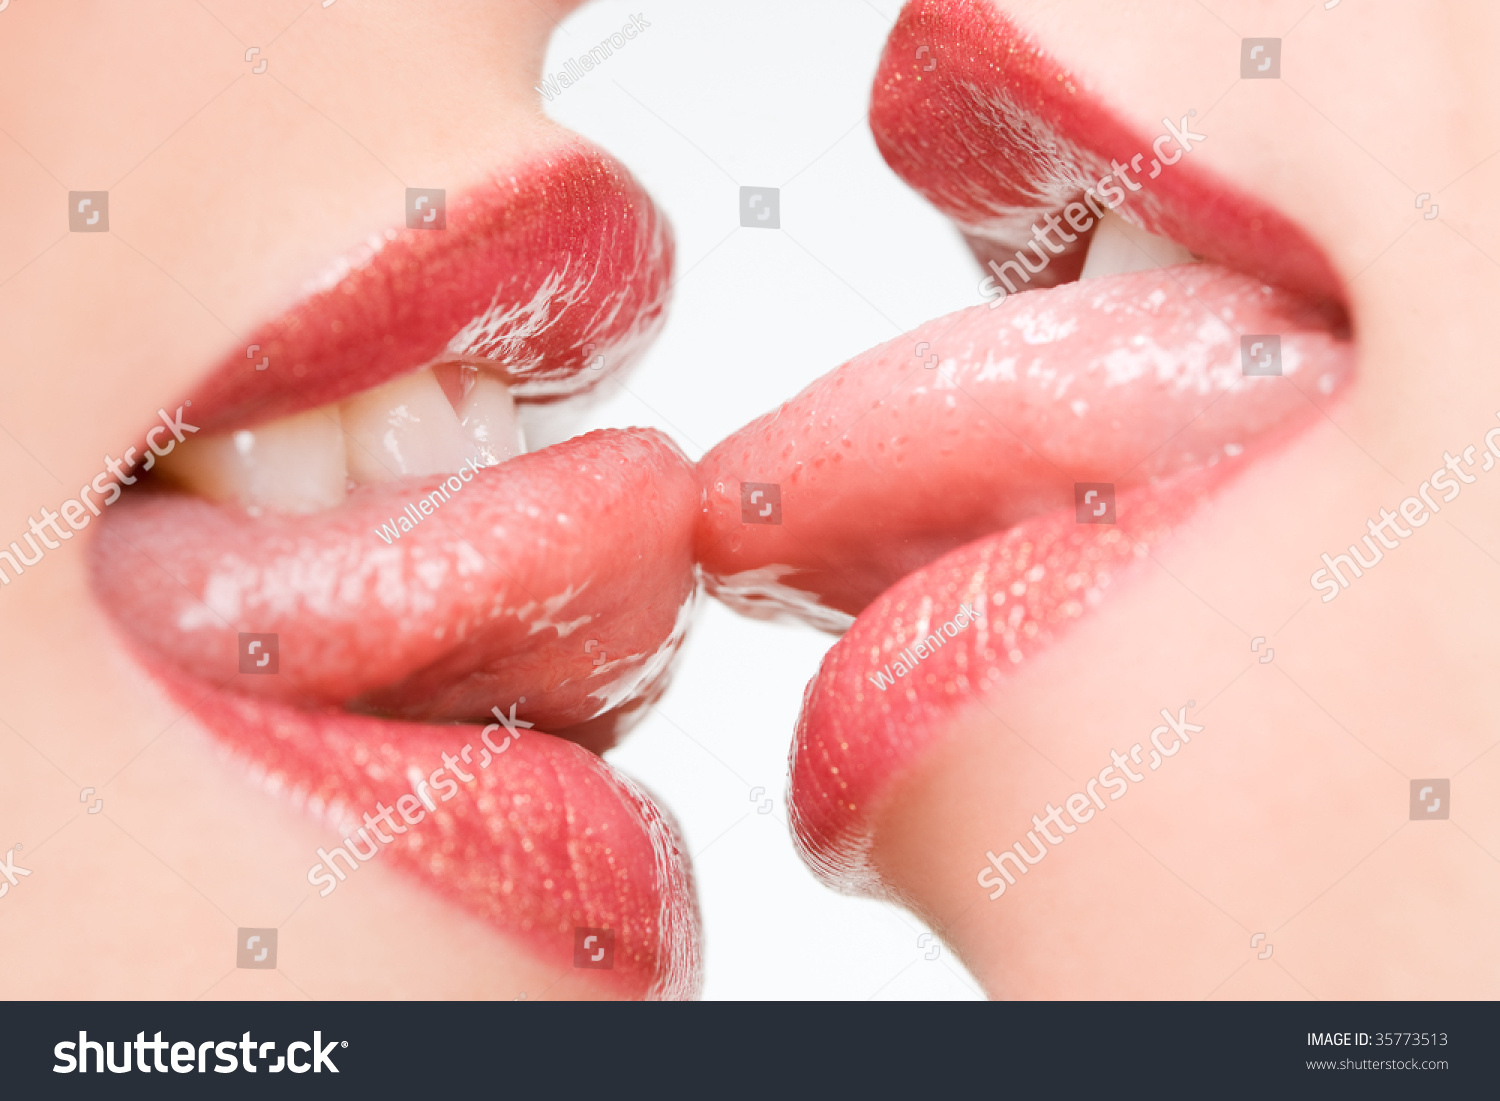 Красиво лижет языком. Поцелуй с языком. Женские губы. Женский поцелуй. Поцелуй в губы.